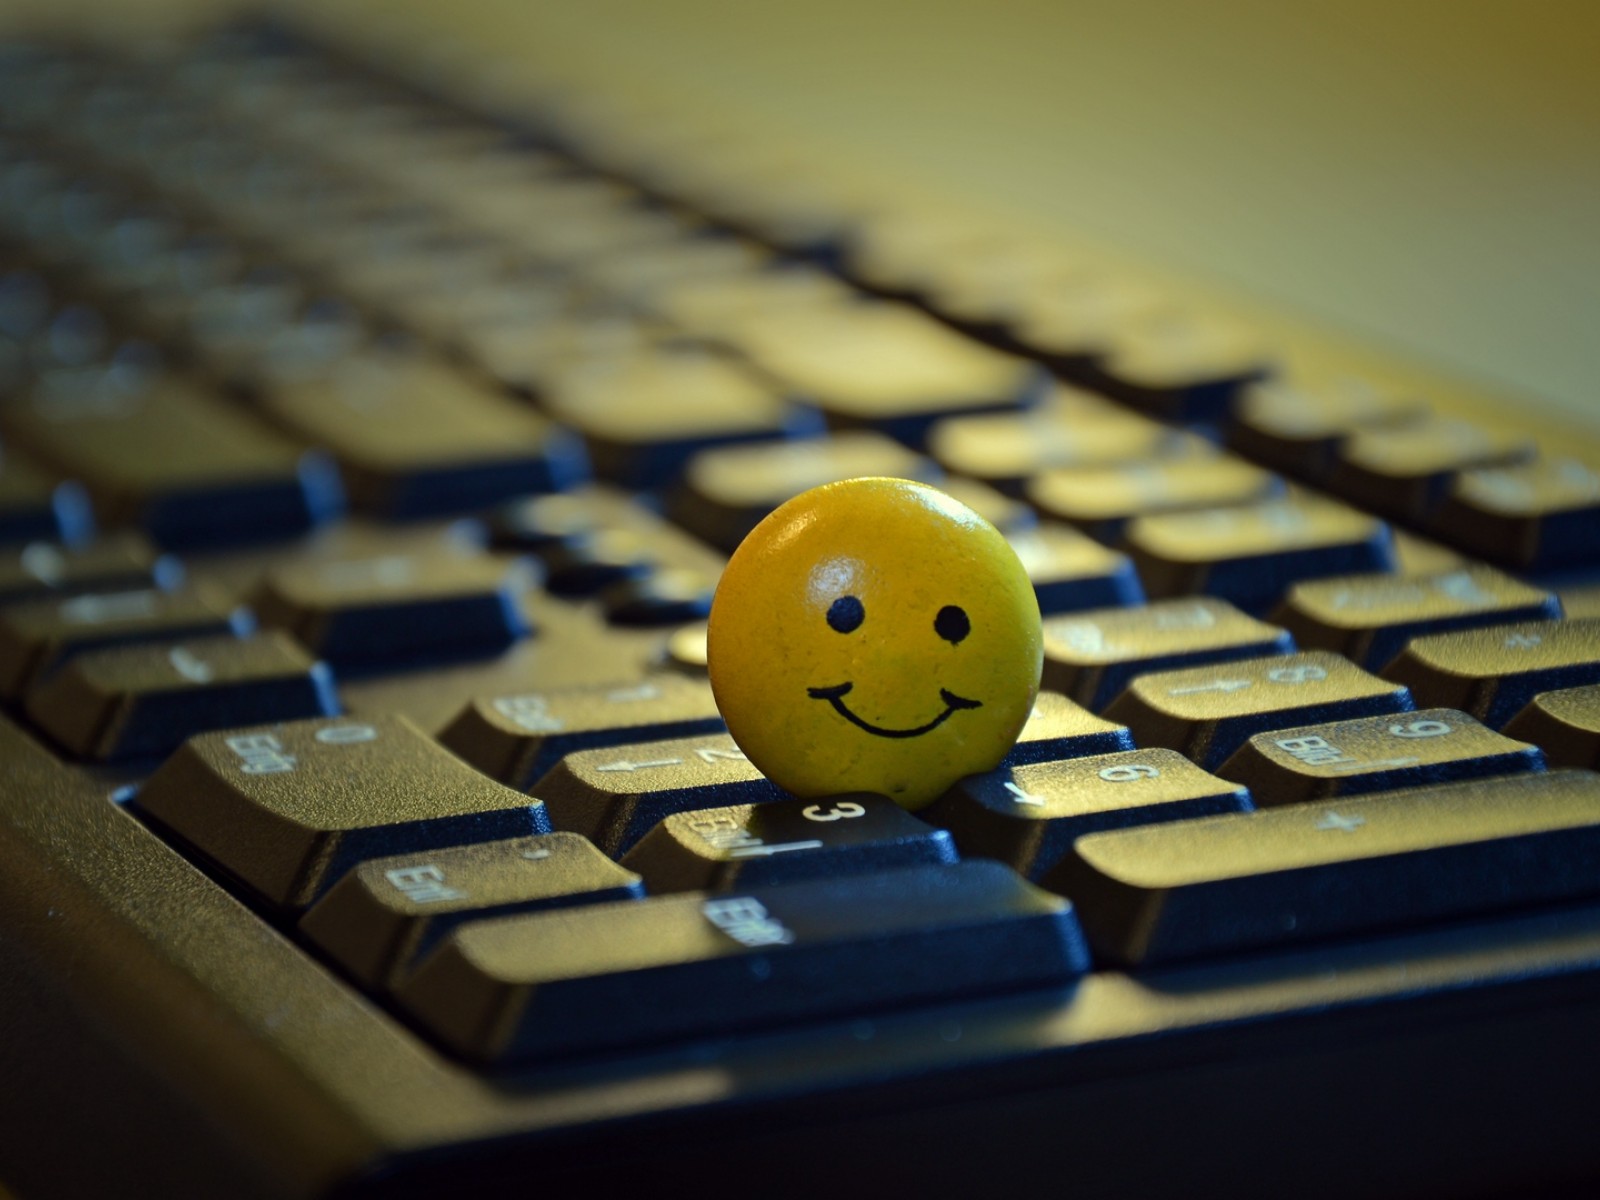 Smiley standing on a keyboard HD Wallpaper 1600x1200 - HD Wallpaper -  